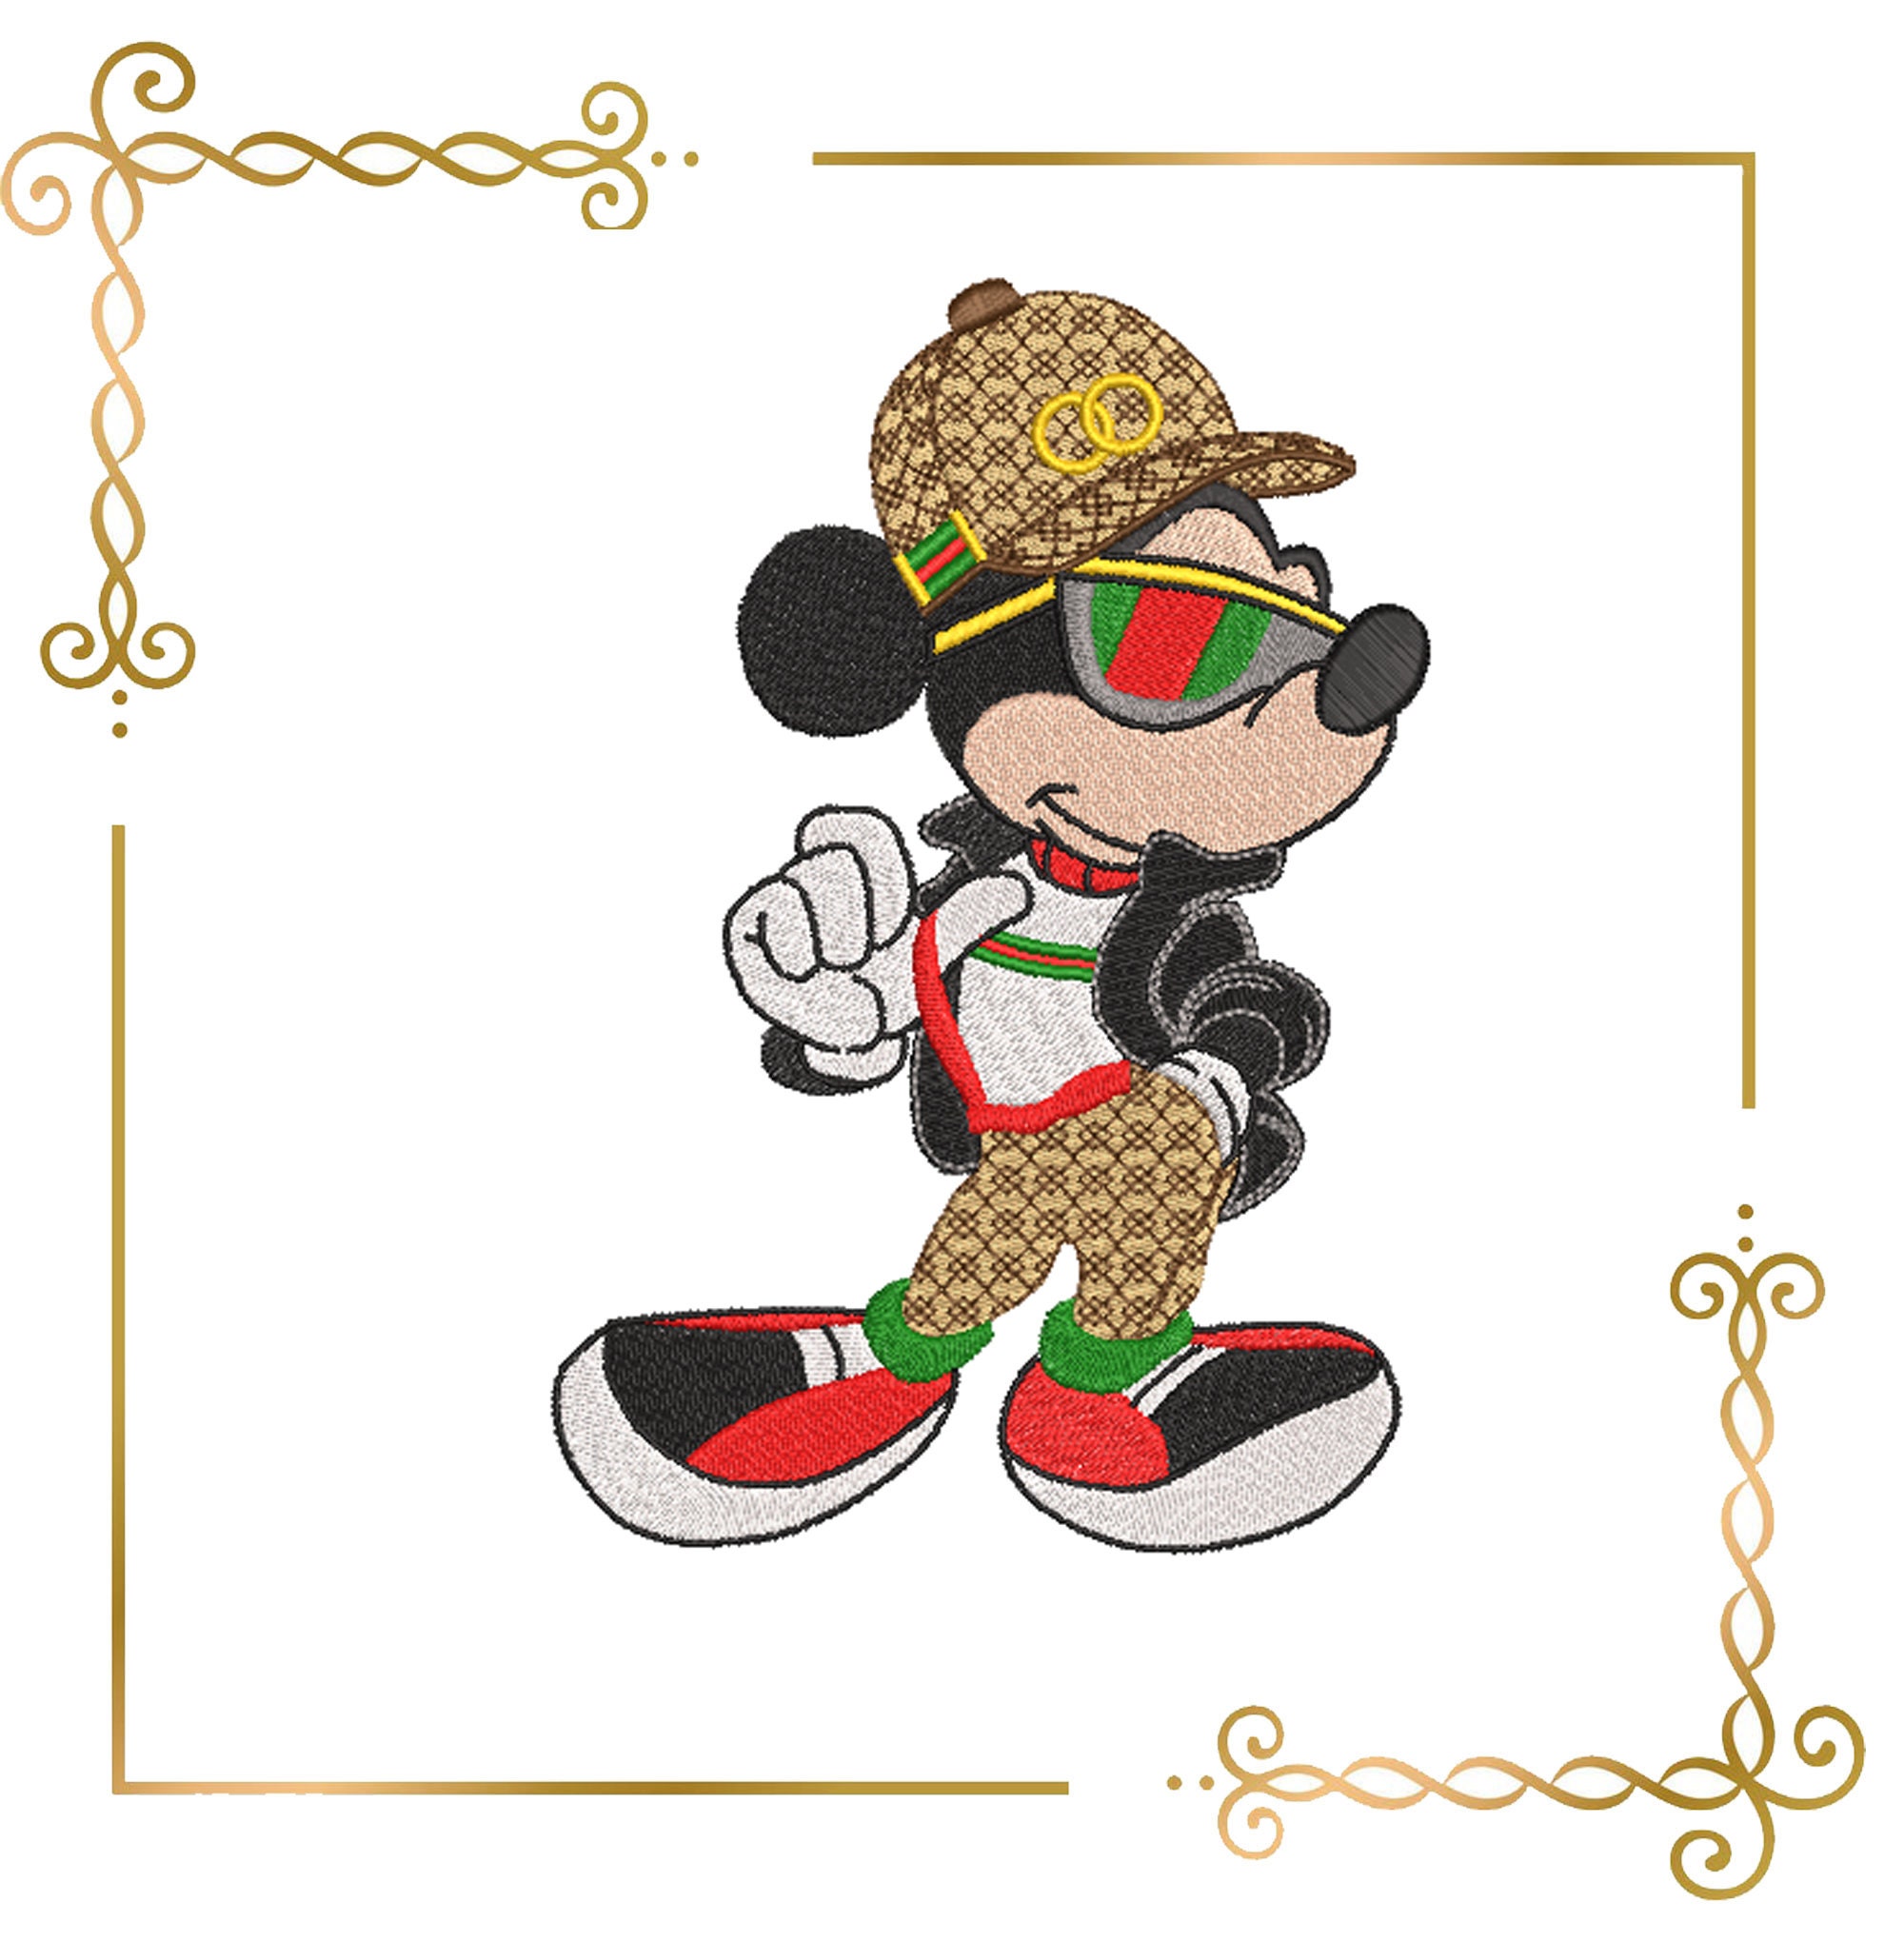 Gucci Mickey 